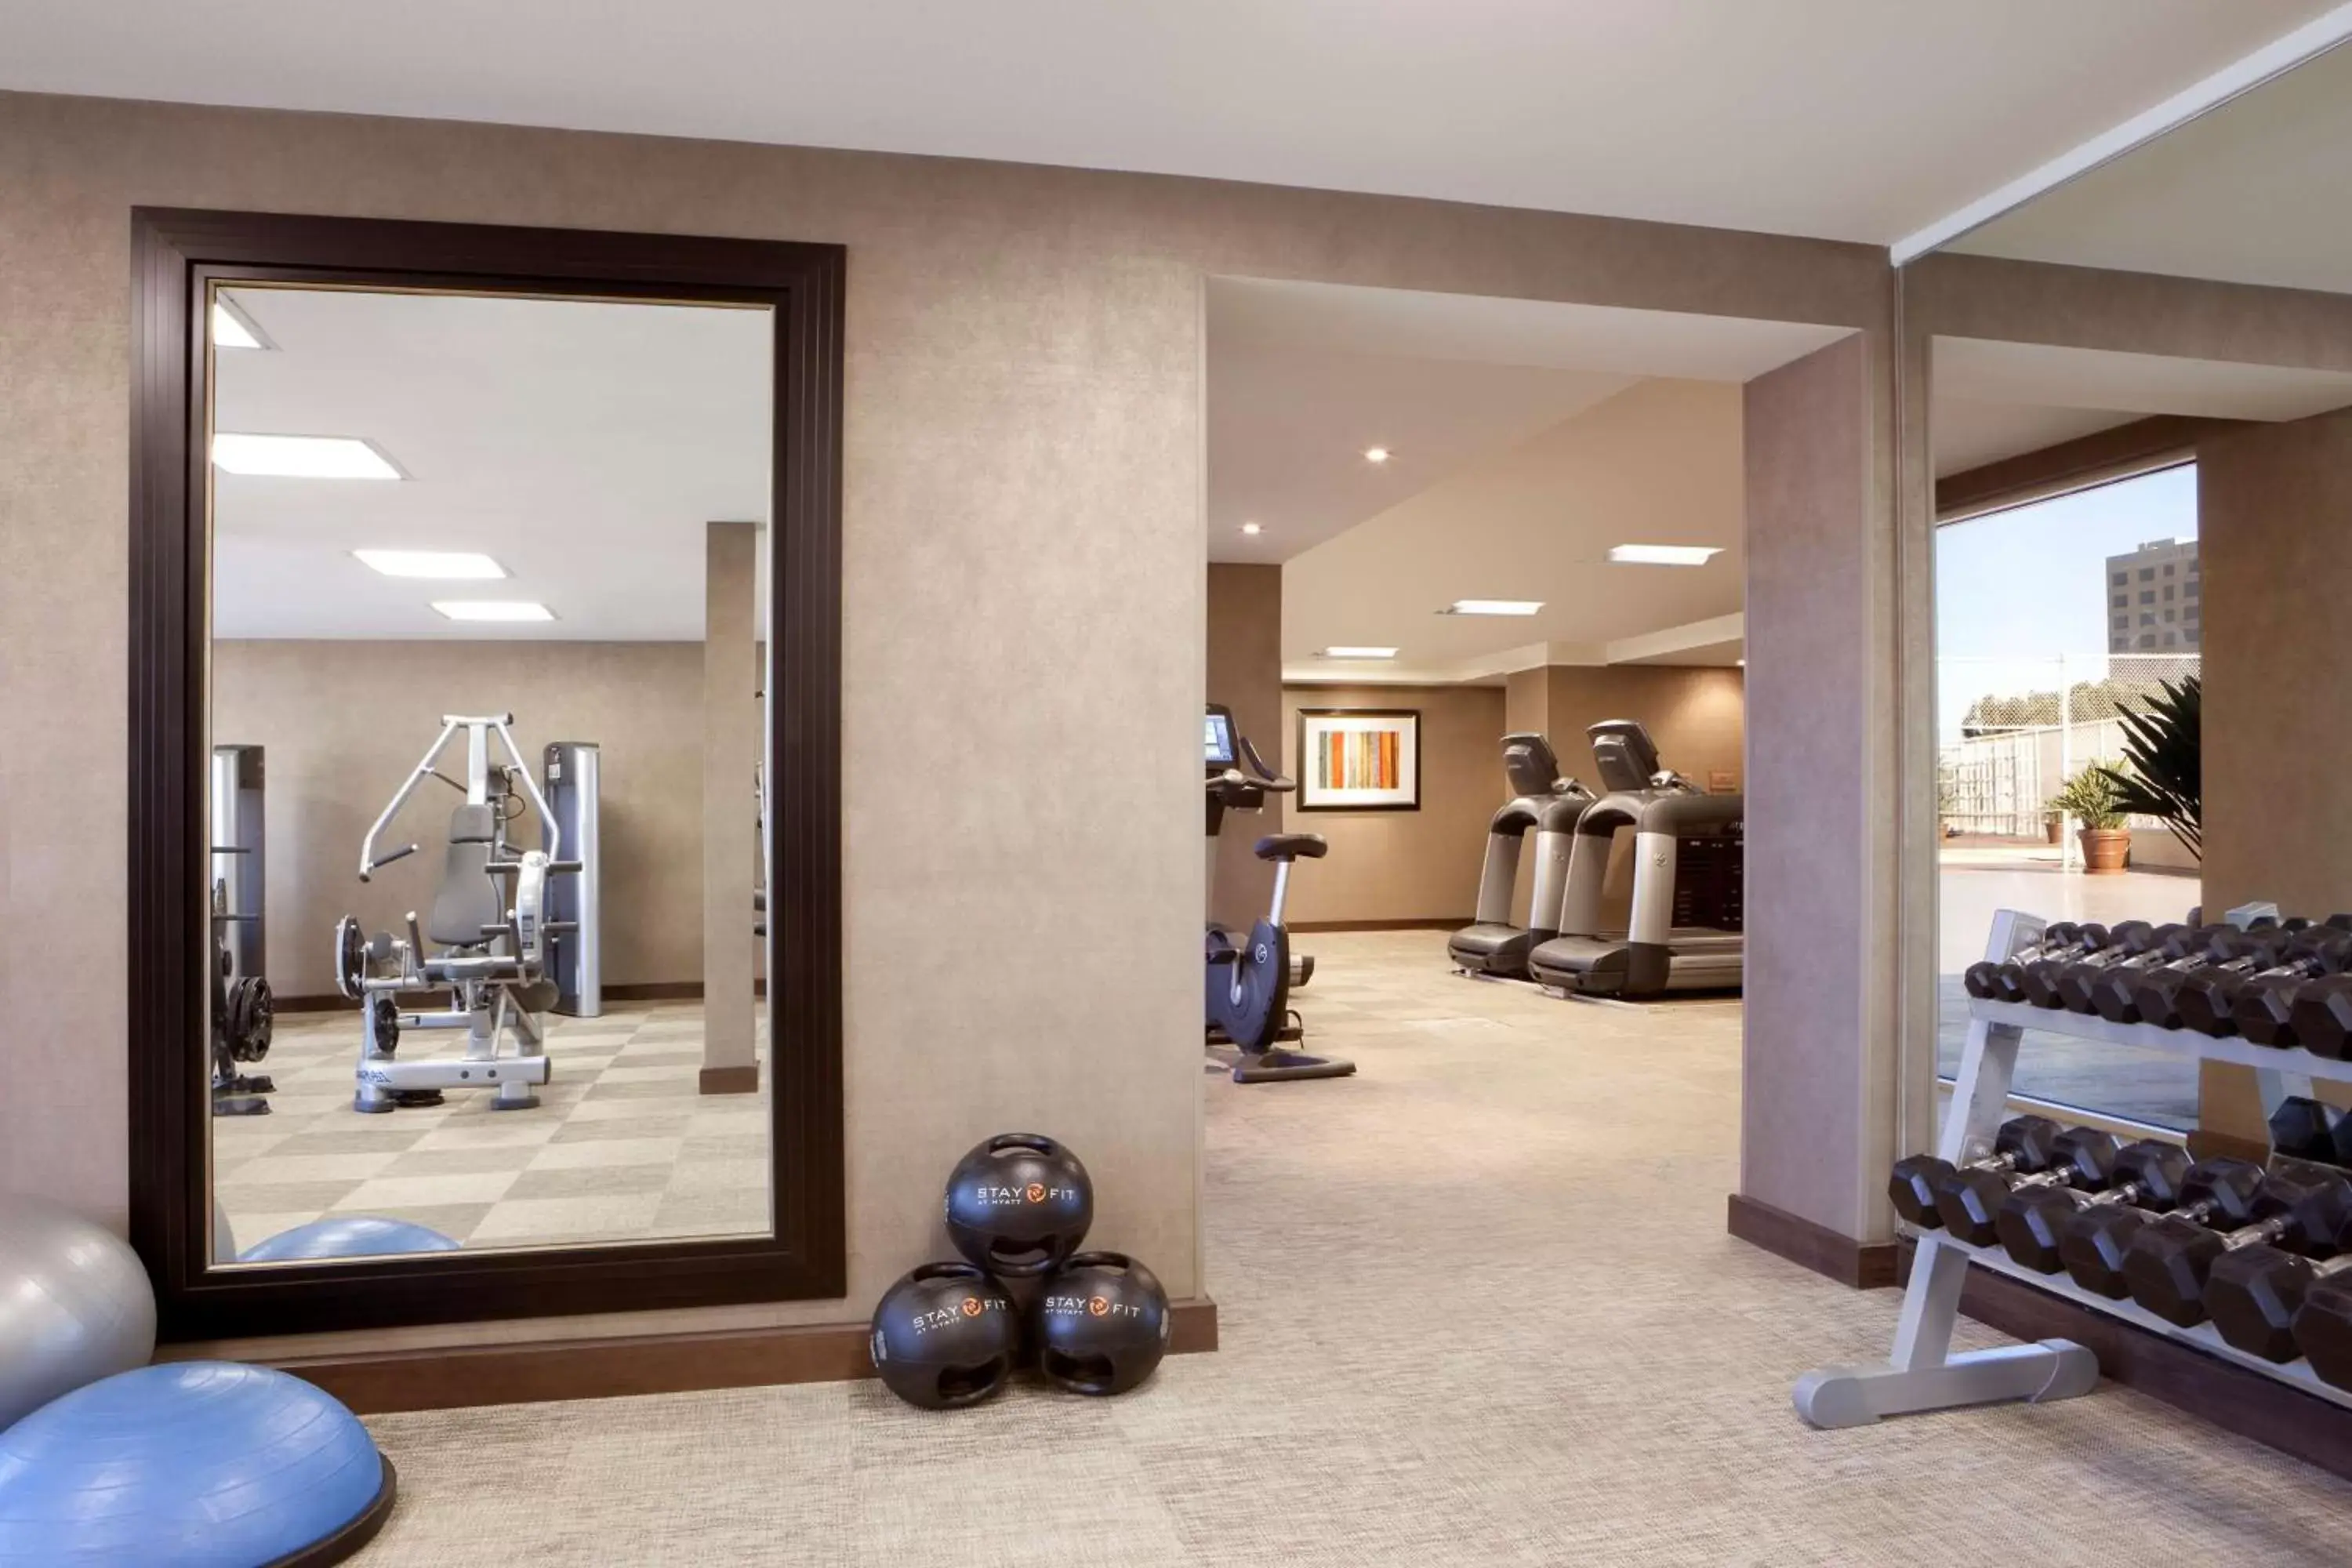 Fitness centre/facilities, Fitness Center/Facilities in Hyatt Regency Orange County